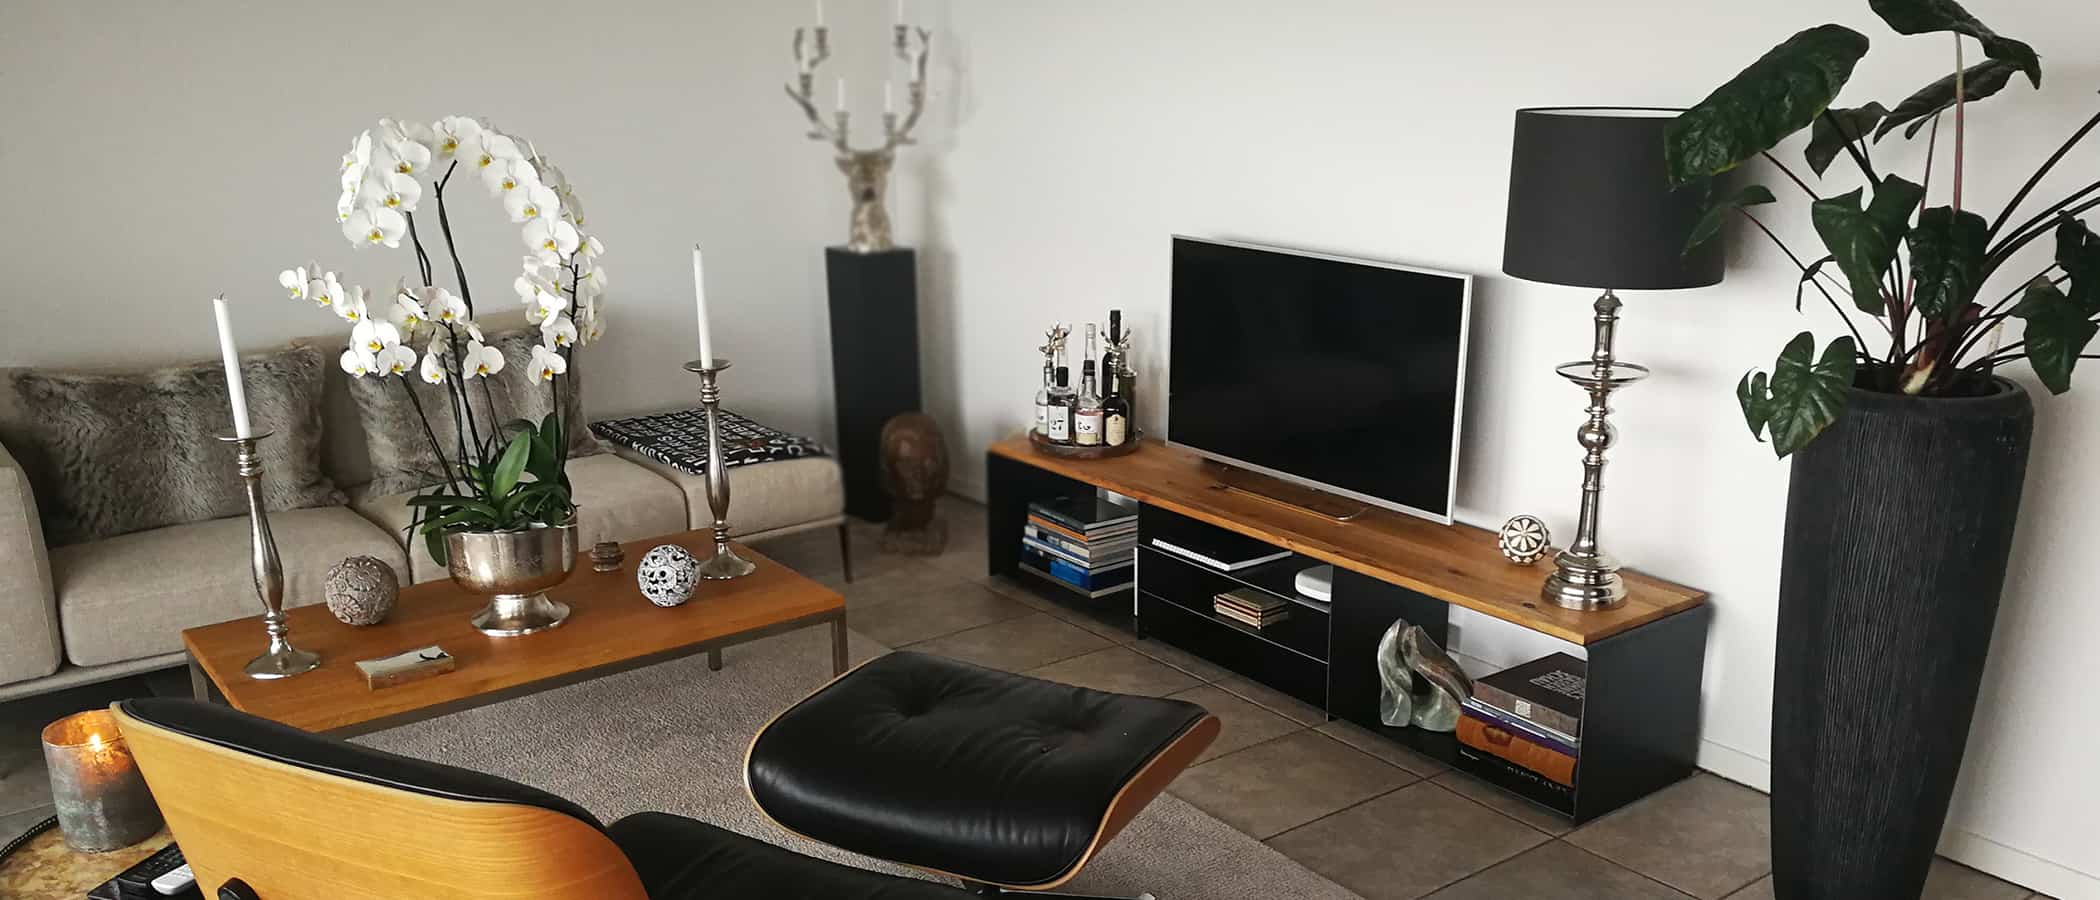 industrial-moebel-style-design-stahlzart-tv-lowboard-lounge-chair-couchtisch-holz-schwarz-eiche-massiv-modern-metall-massivholz-grau-designer-wohnzimmer-wildeiche-fernseher-stahl-ideen